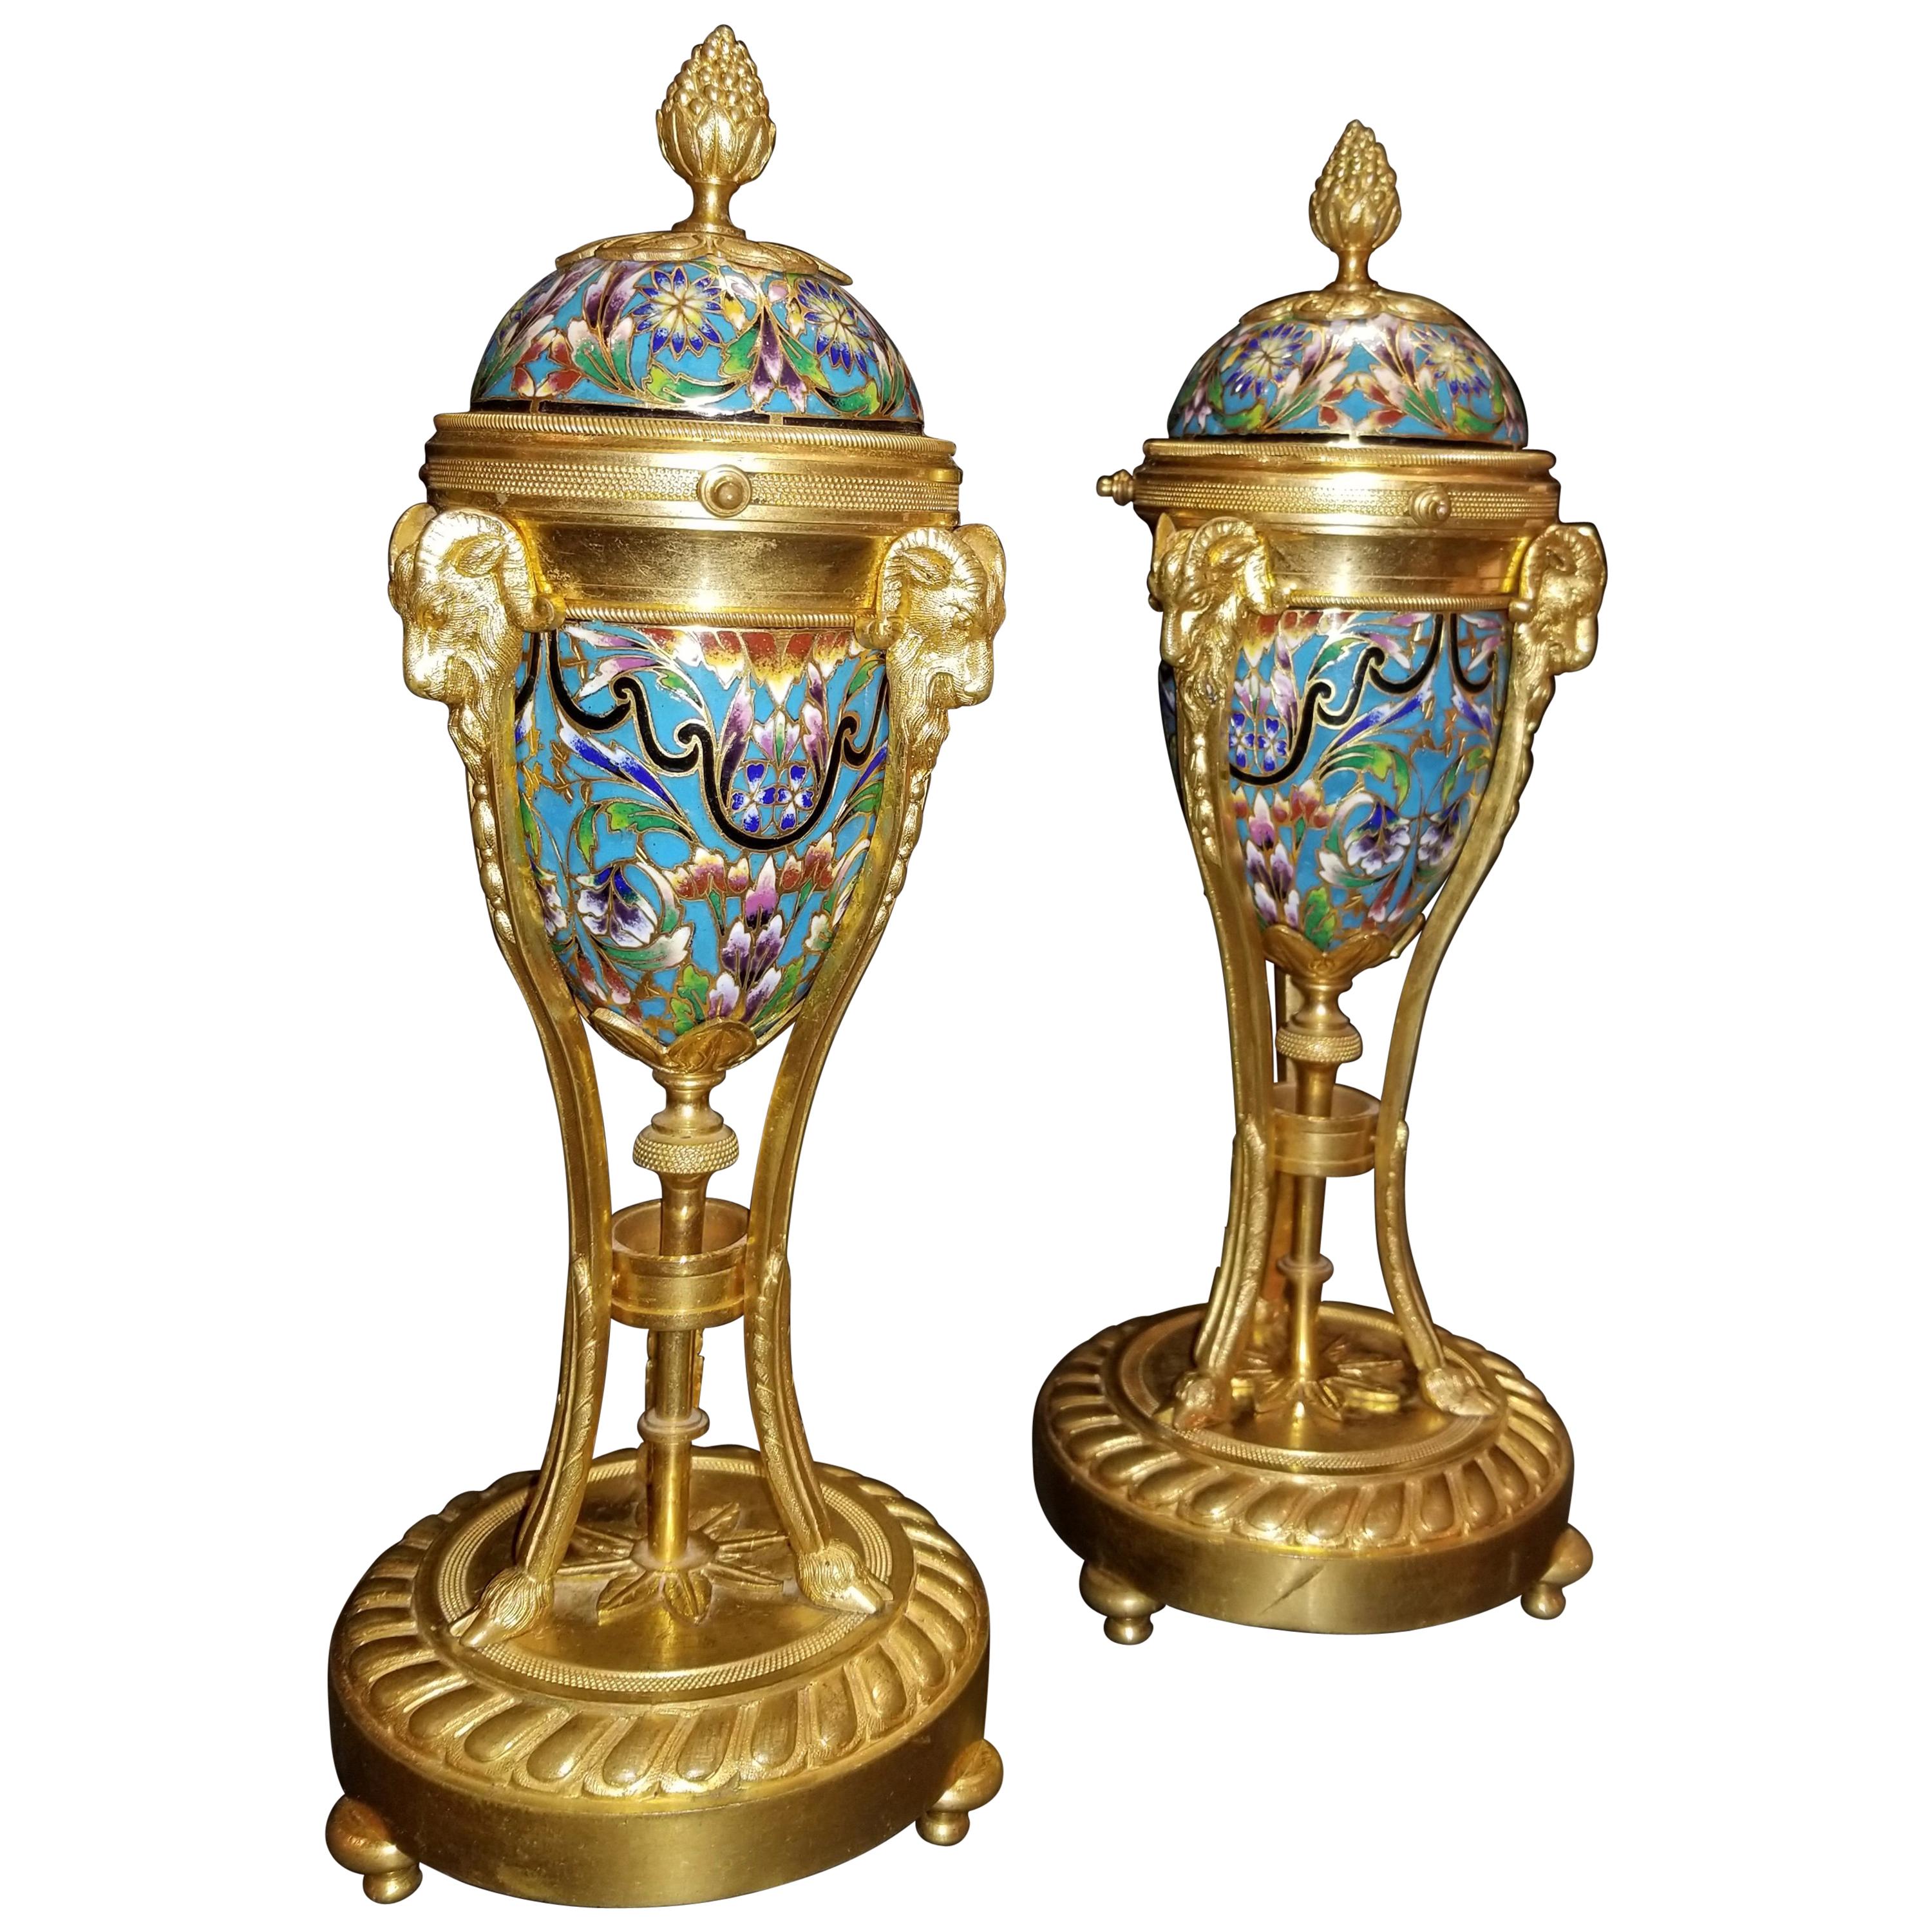 Pair of Antique French Louis XVI Style Cloisonné Enamel and Ormolu Cassolettes